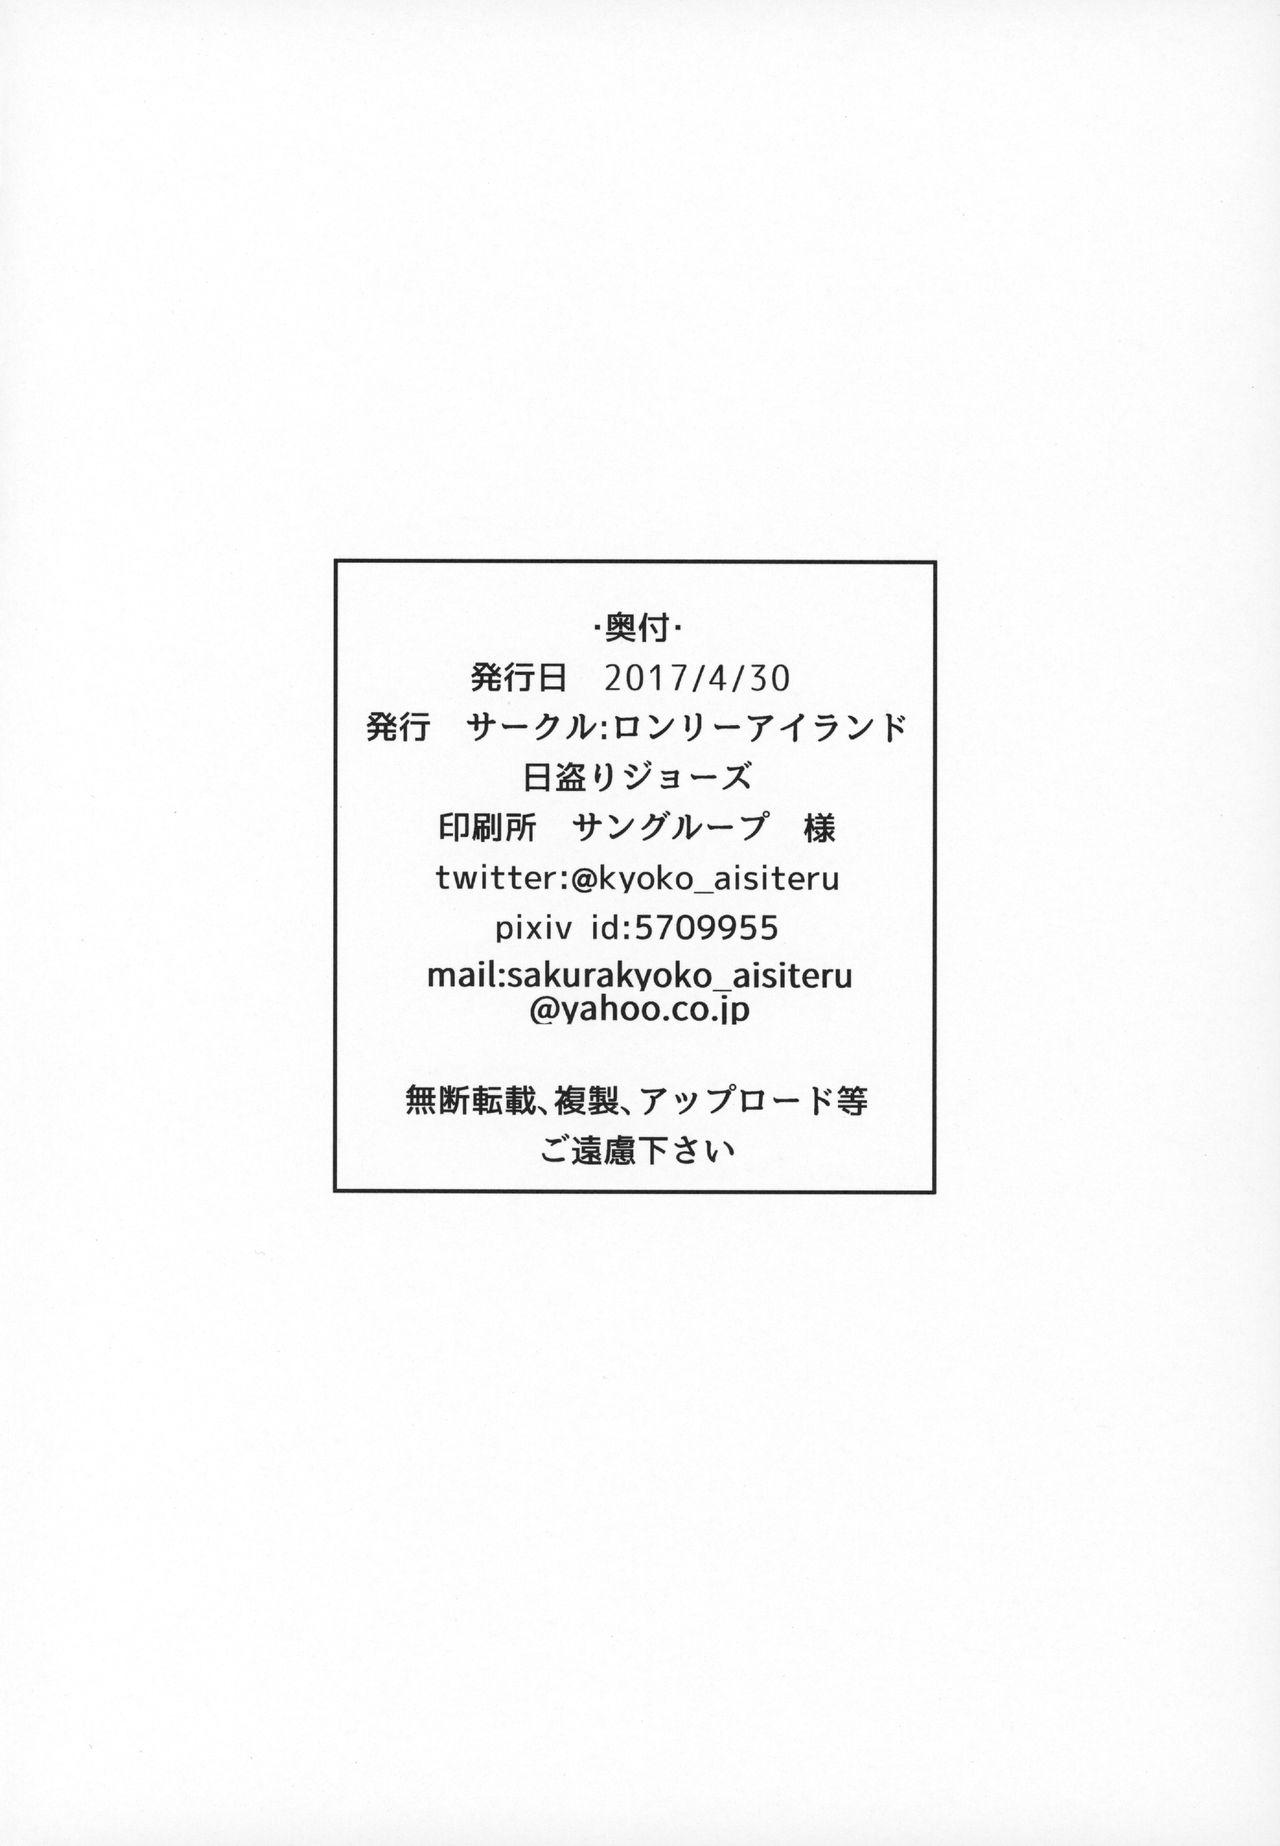 Footfetish Haru no Hypnose - Puella magi madoka magica Action - Page 17